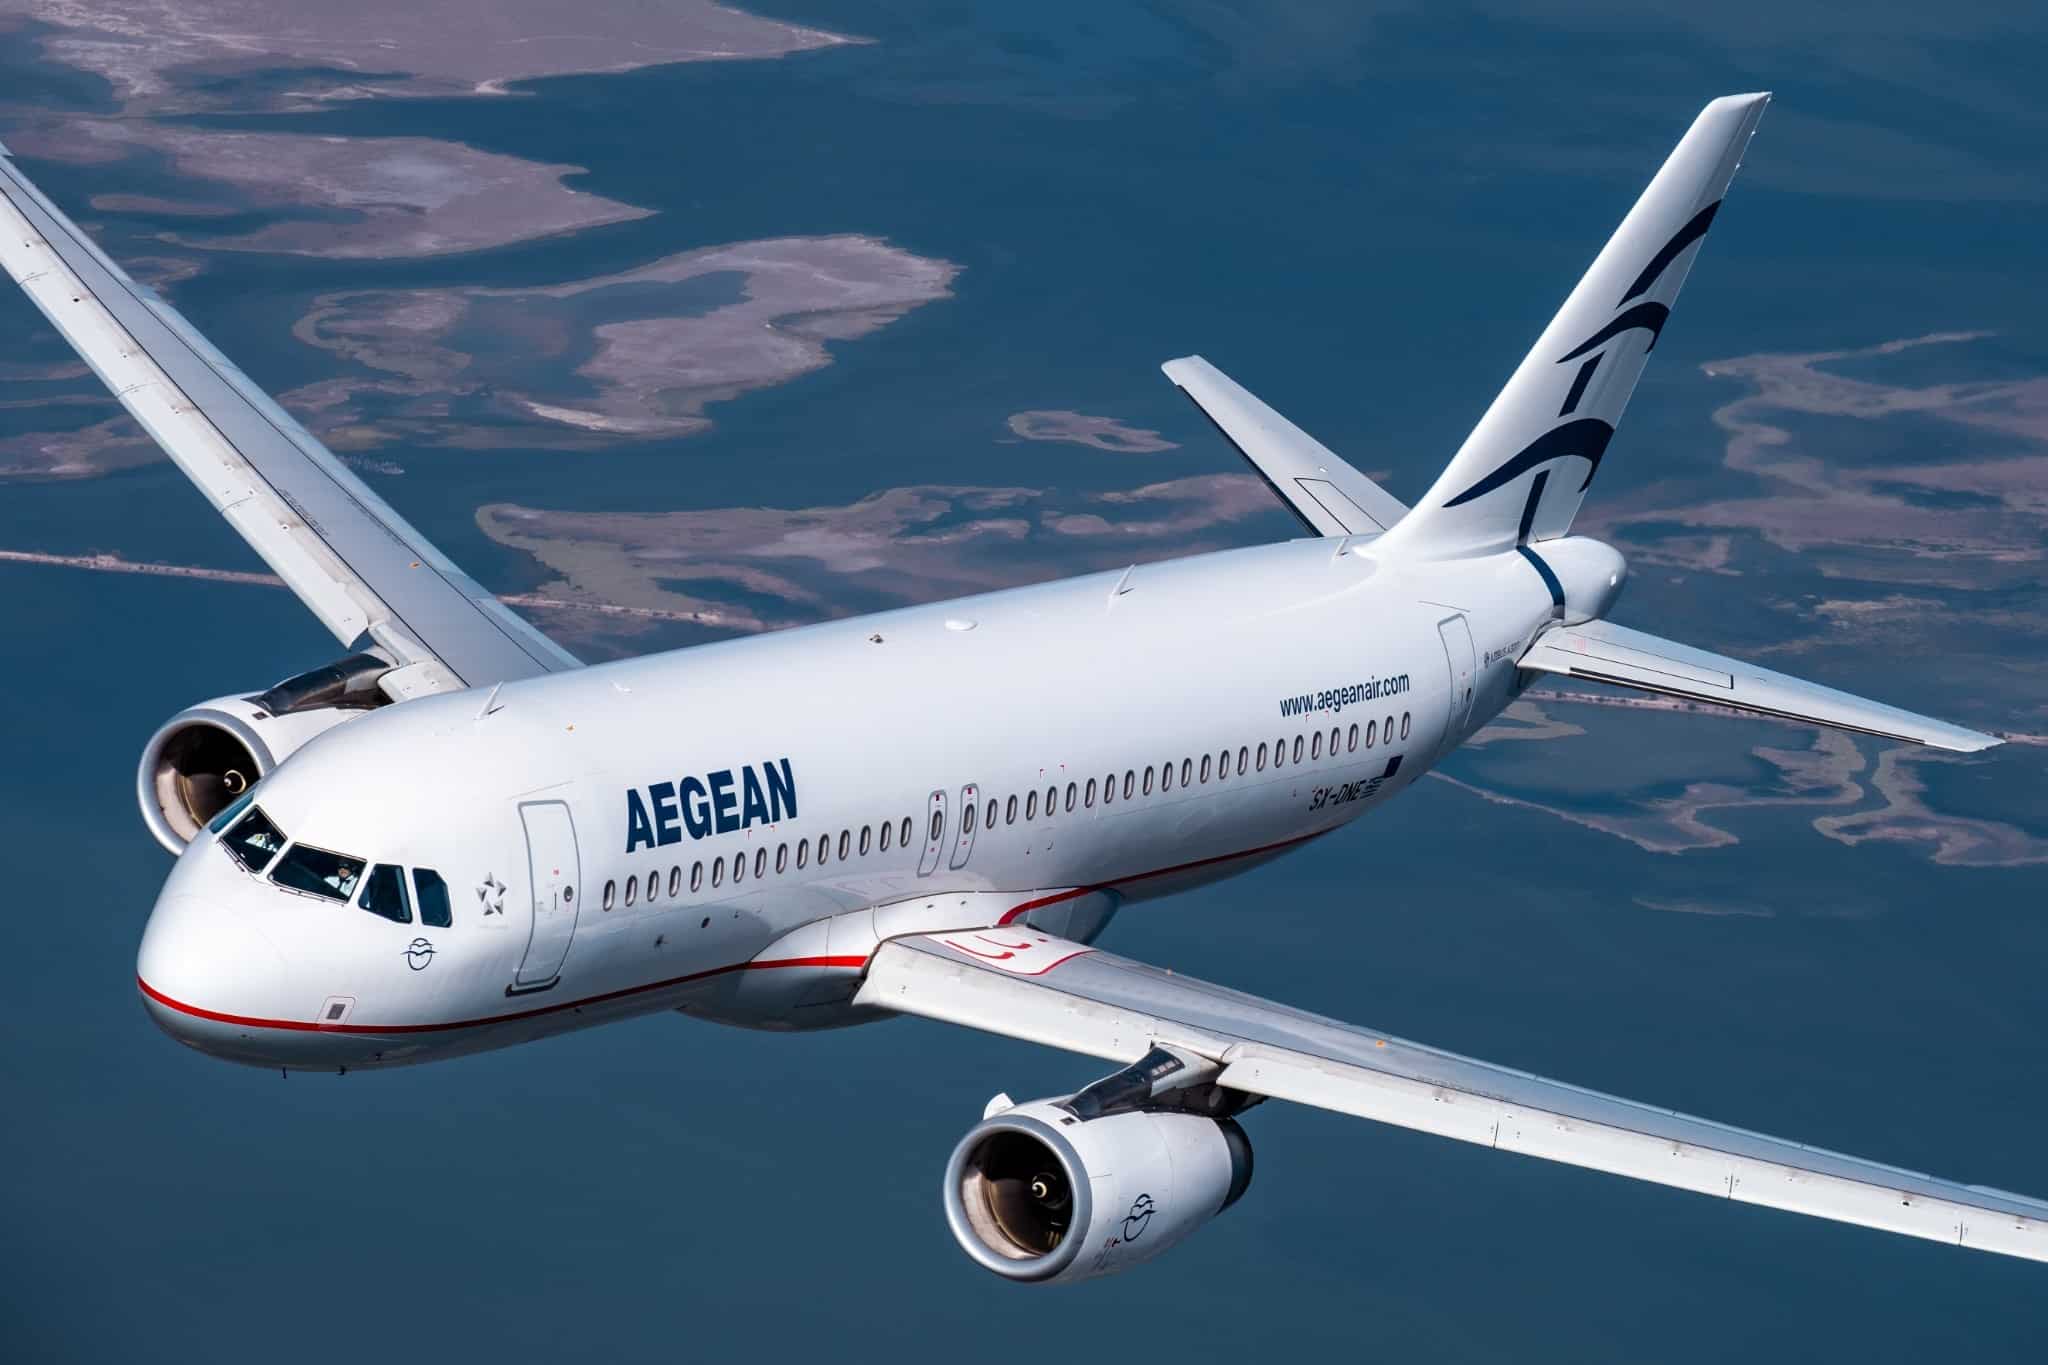 Η Aegean ανακοίνωσε έκπτωση 30% σε όλες τις πτήσεις της